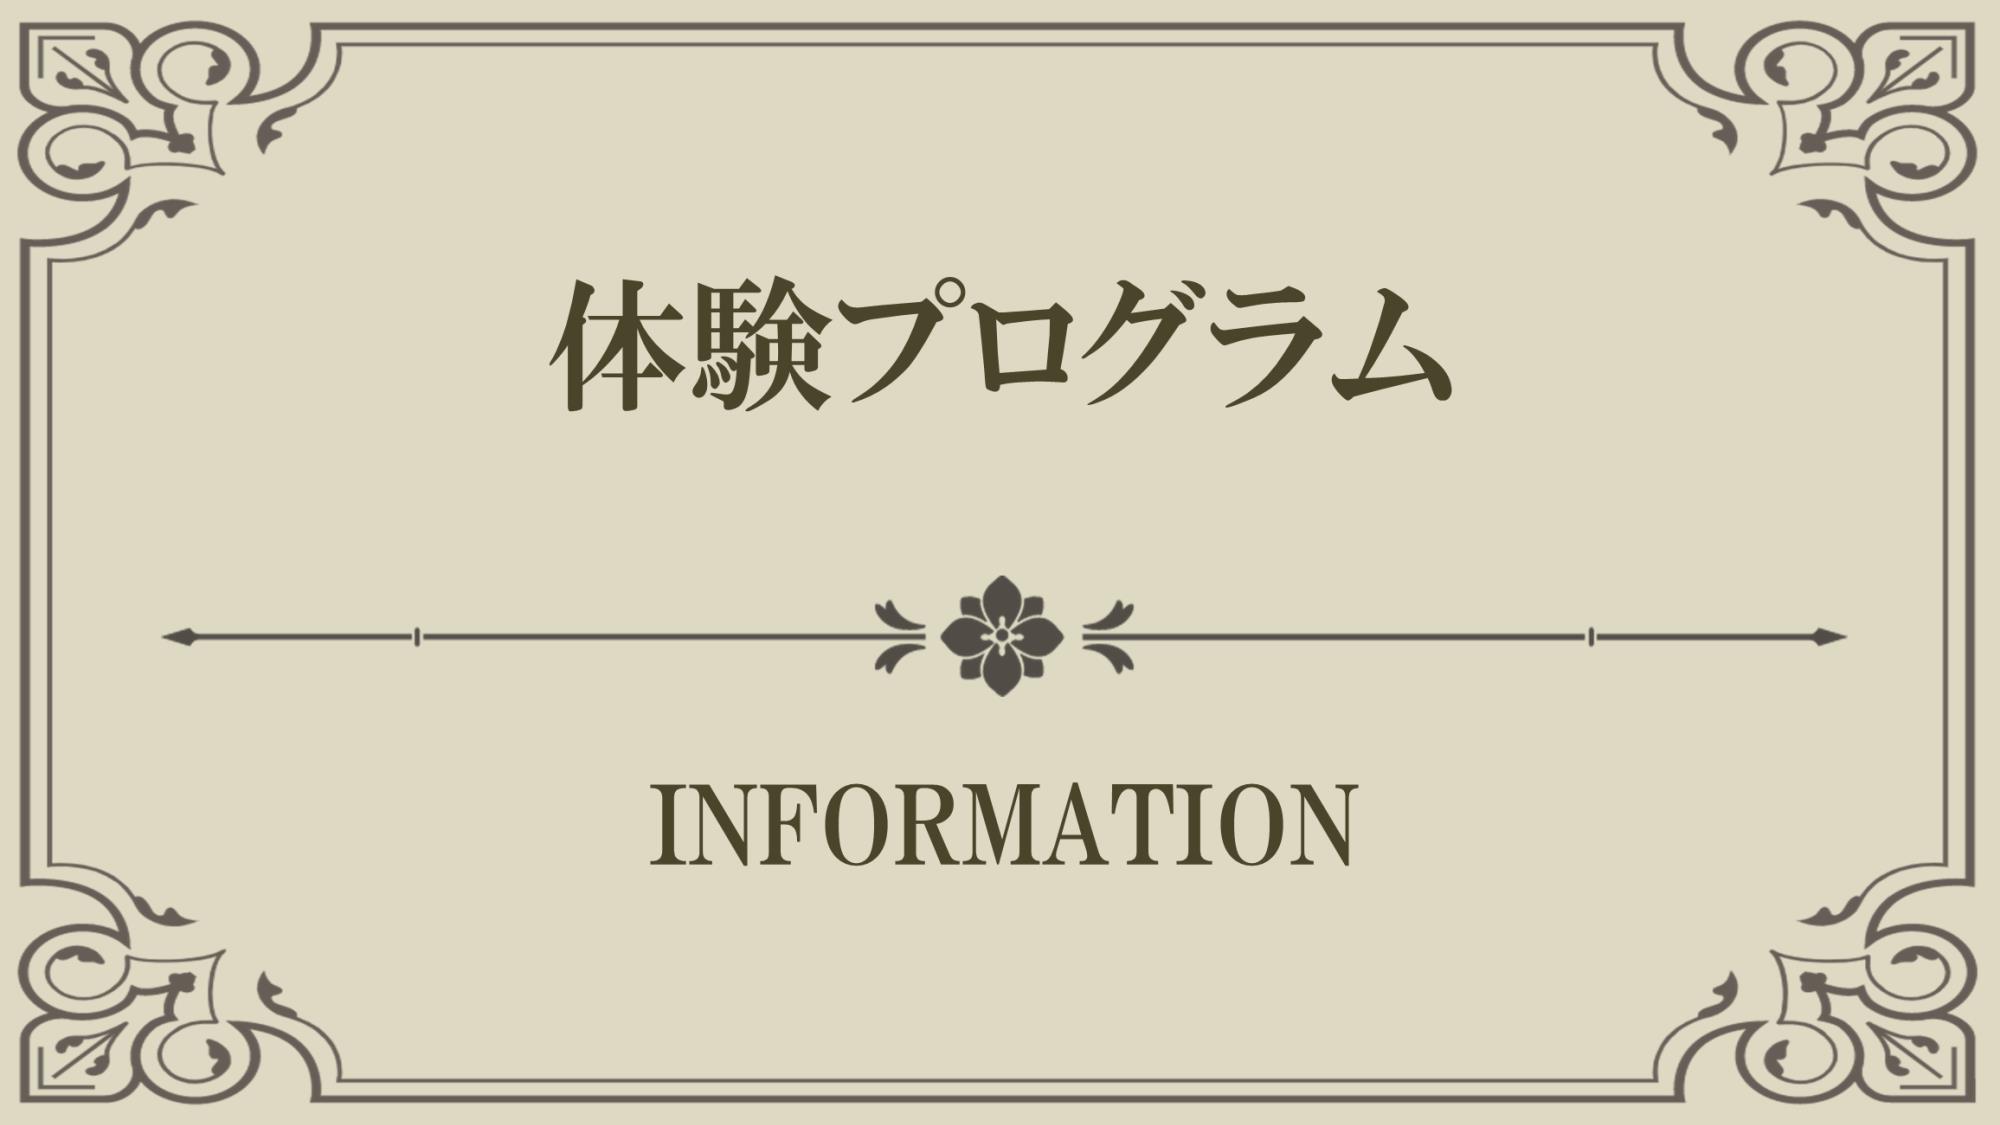 【Index】体験プログラム